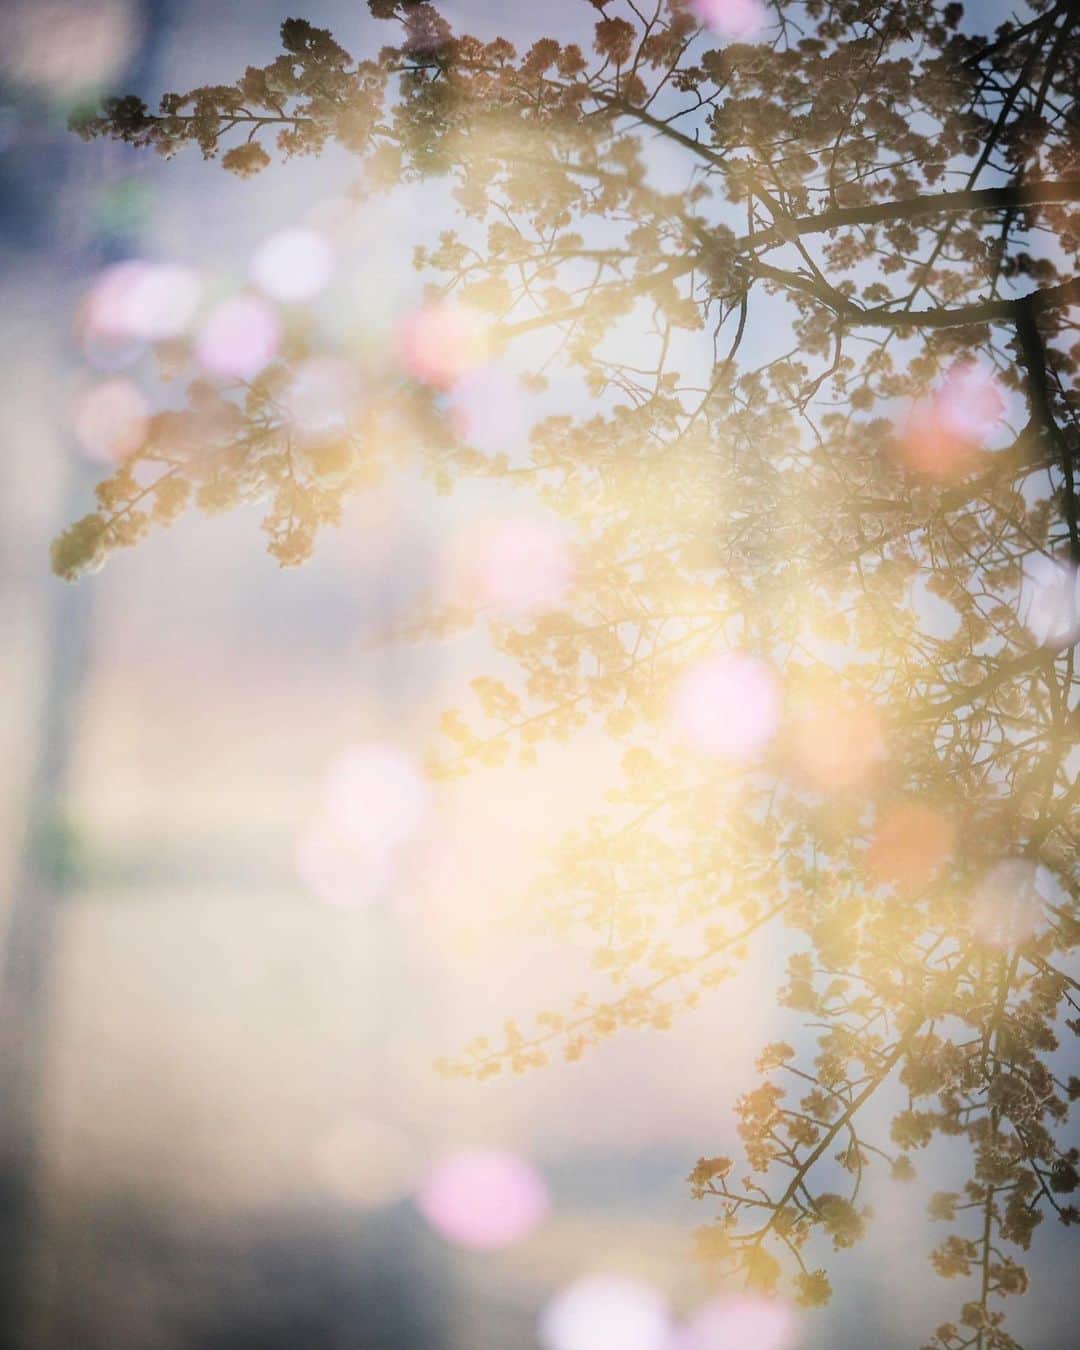 大杉隼平のインスタグラム：「儚いか美しいか。  水溜まりに映る桜。舞い落ちる桜。  一瞬を写す為に光を待ち、風が吹くのを待つ。  この街でこの瞬間を見れて良かった。  #徳島県 #徳島 #徳島の魅力 #美しの徳島 #日常 #暮らす人々 #伝えたい徳島 #写真 #ohsugi_tokushima #tokushima_photo　 #photography #tokushima #ライカ #leica #両国橋 #桜 #reflection #cherryblossom  #河津桜 #風 #shumpeiohsugi #大杉隼平」